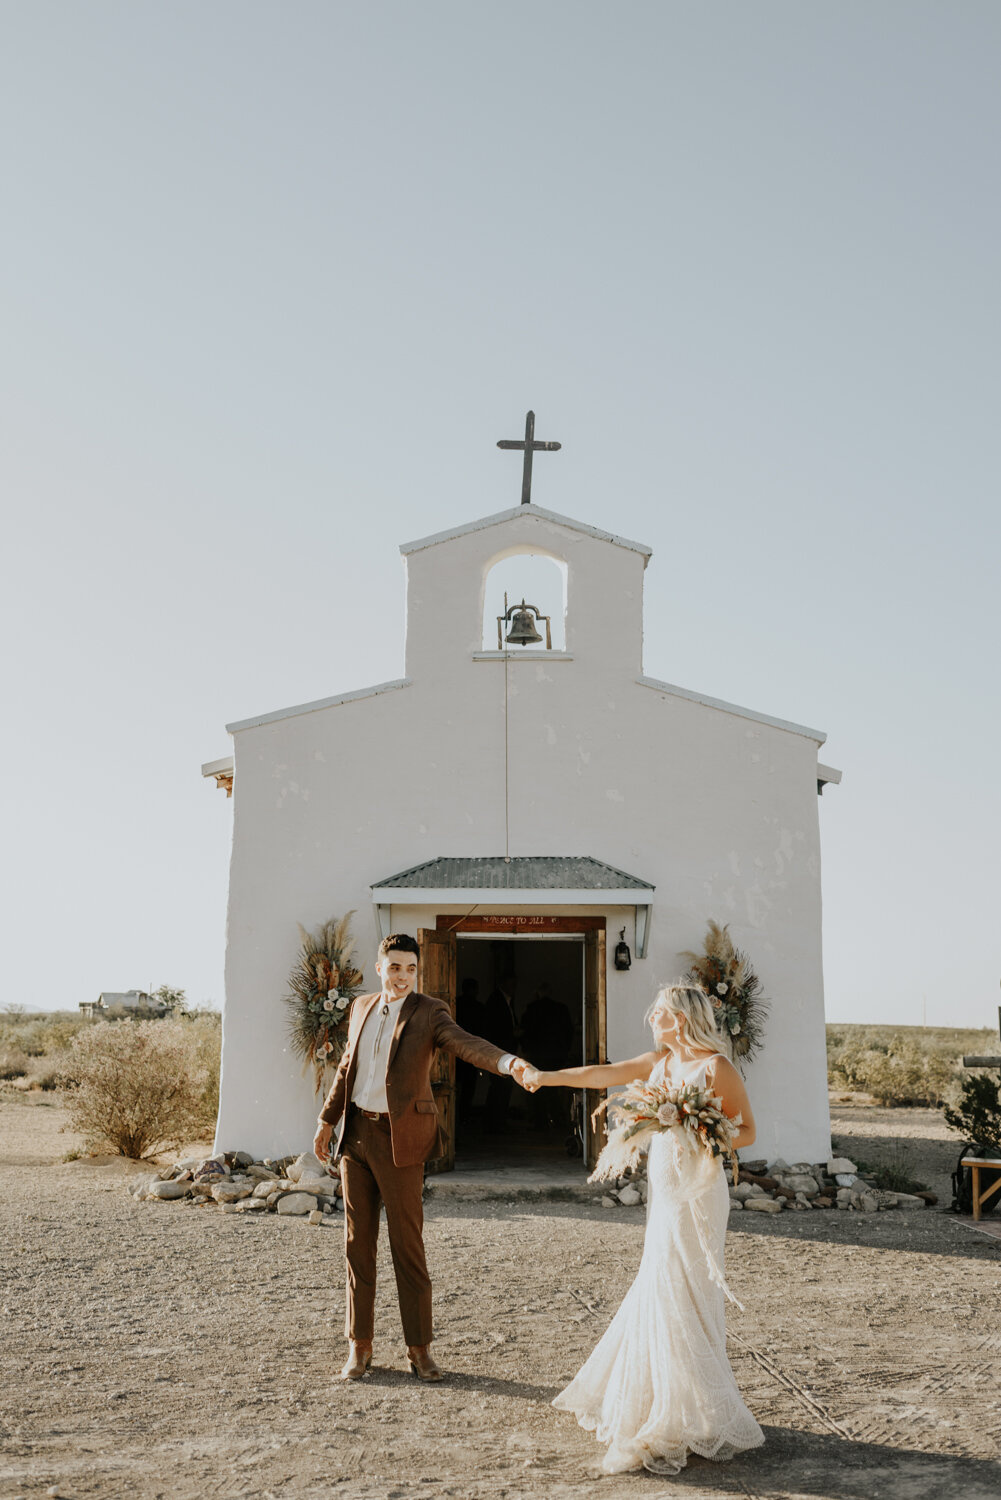 Calera Chapel in Balmorhea, TX Modern Wedding Photography